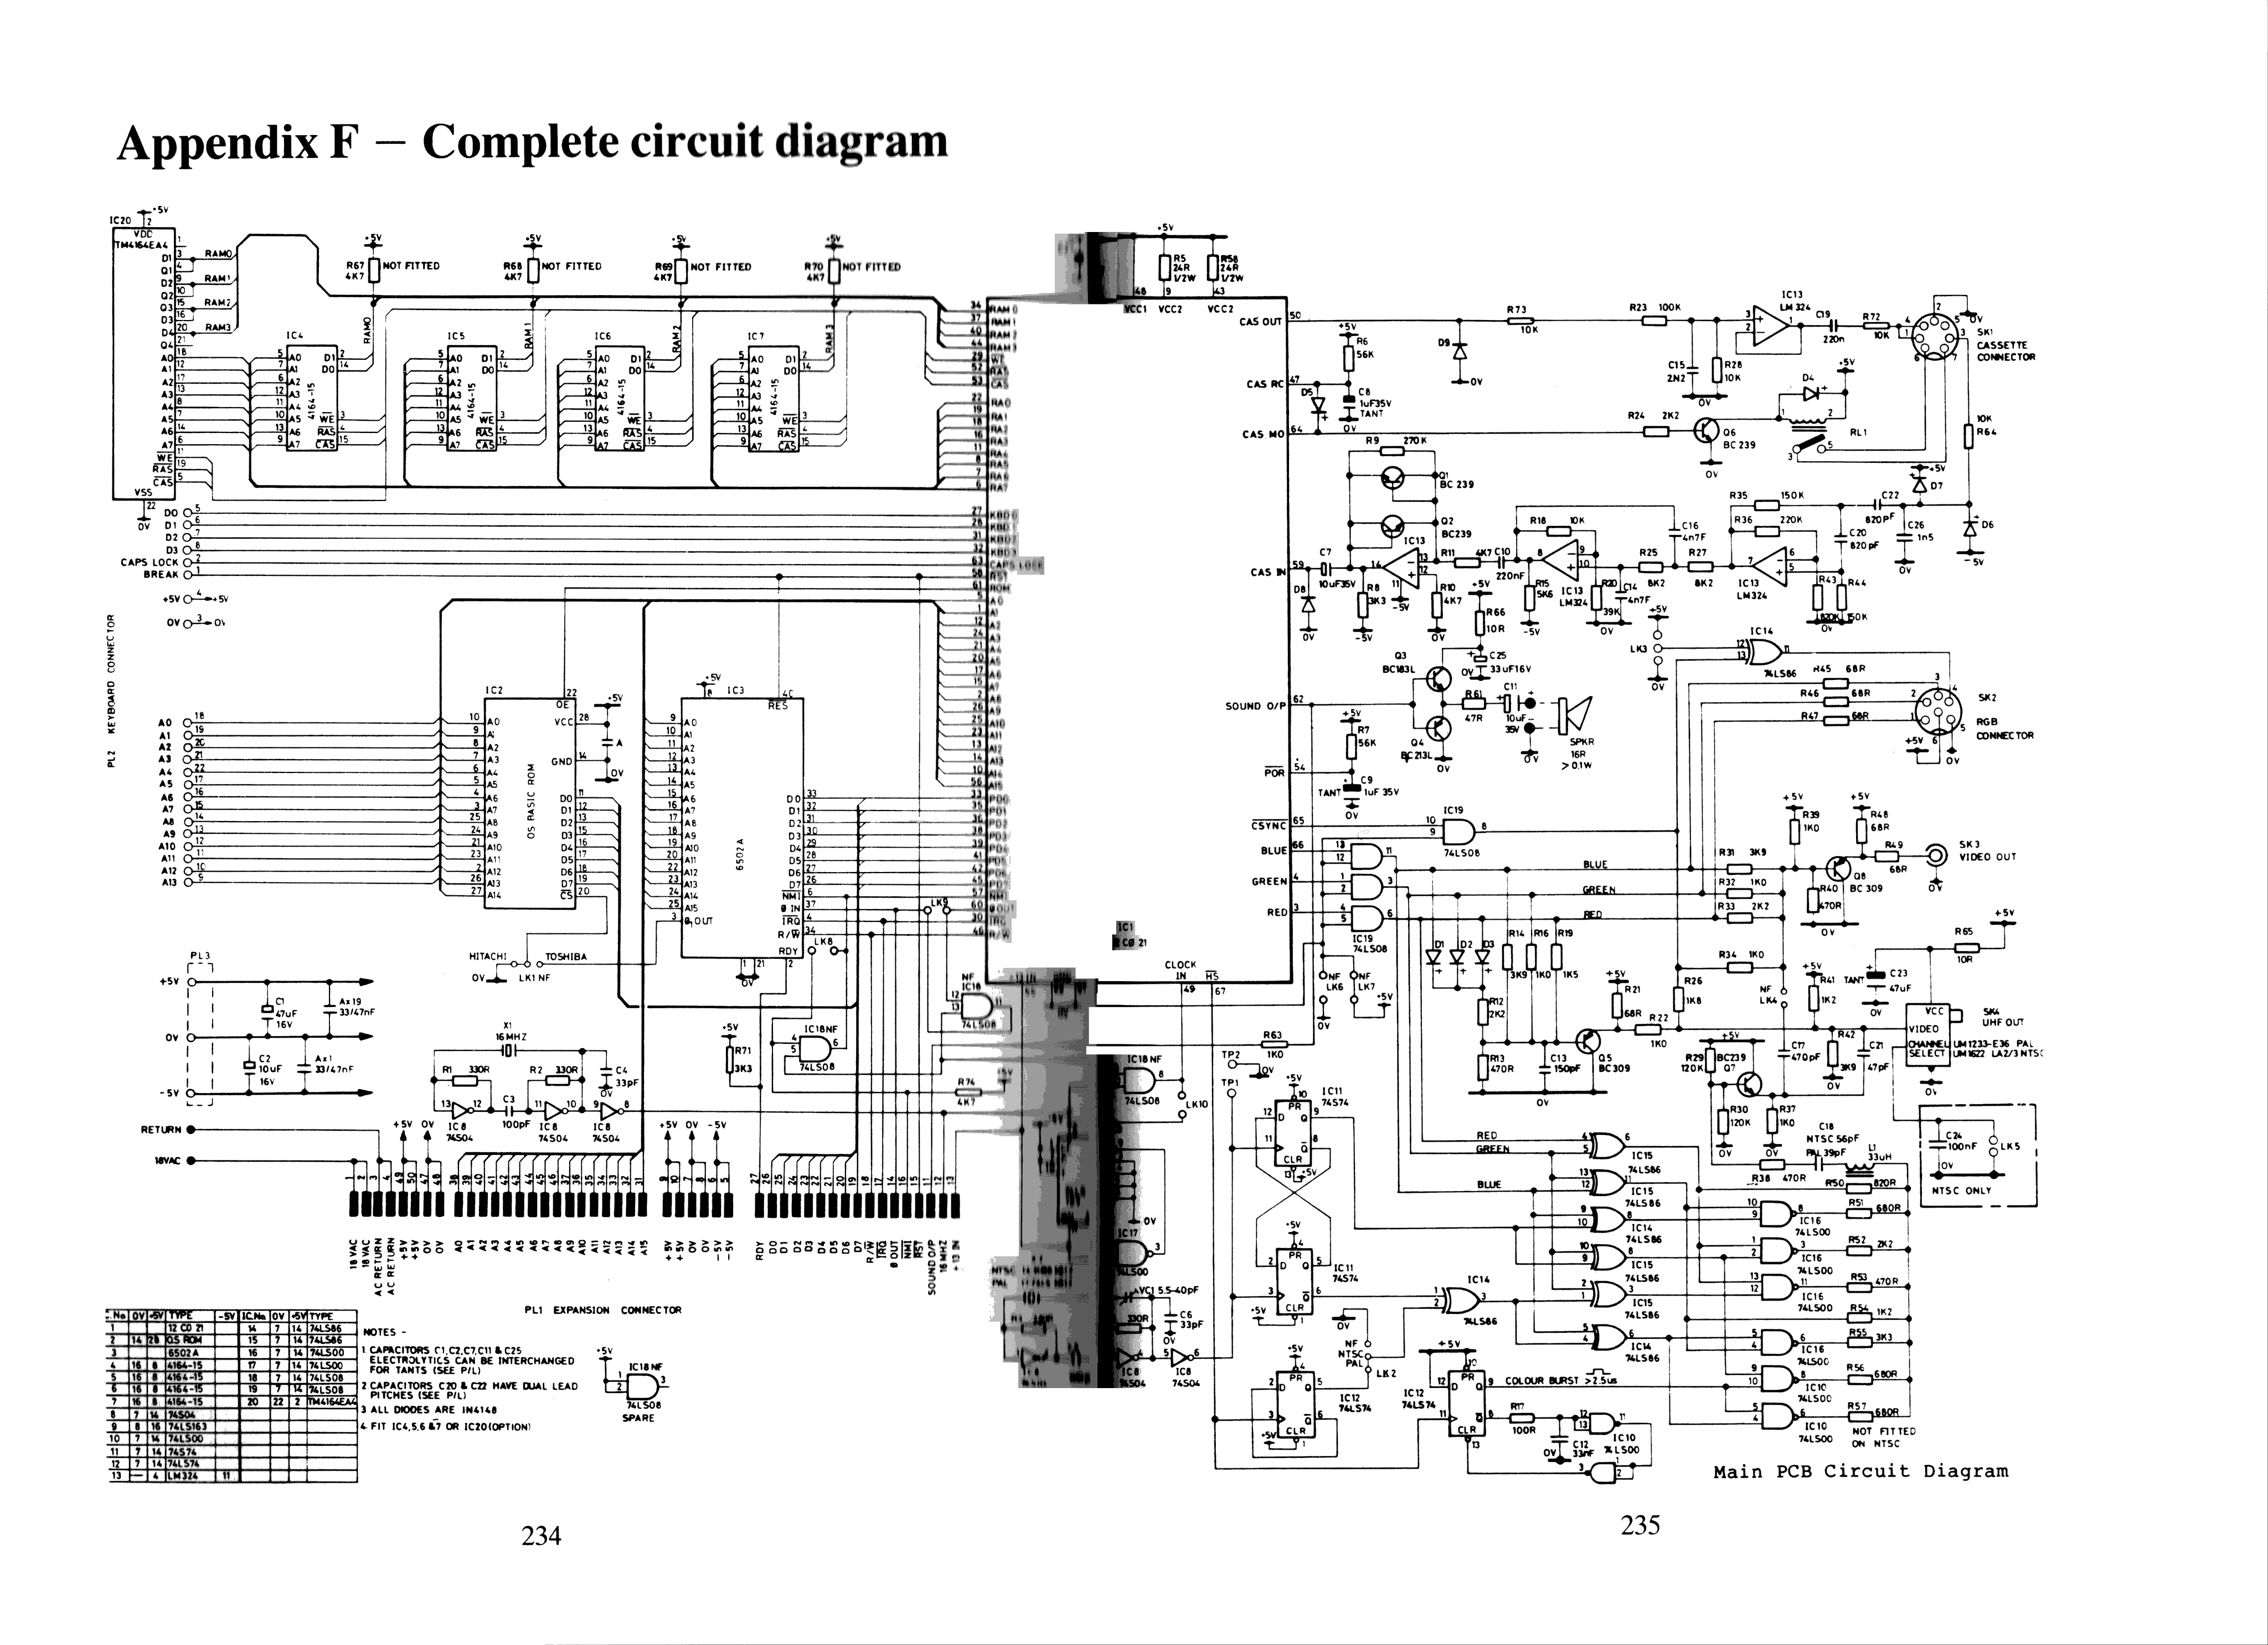 Computer Keyboard Wiring Diagram - Wiring Diagram Schemas